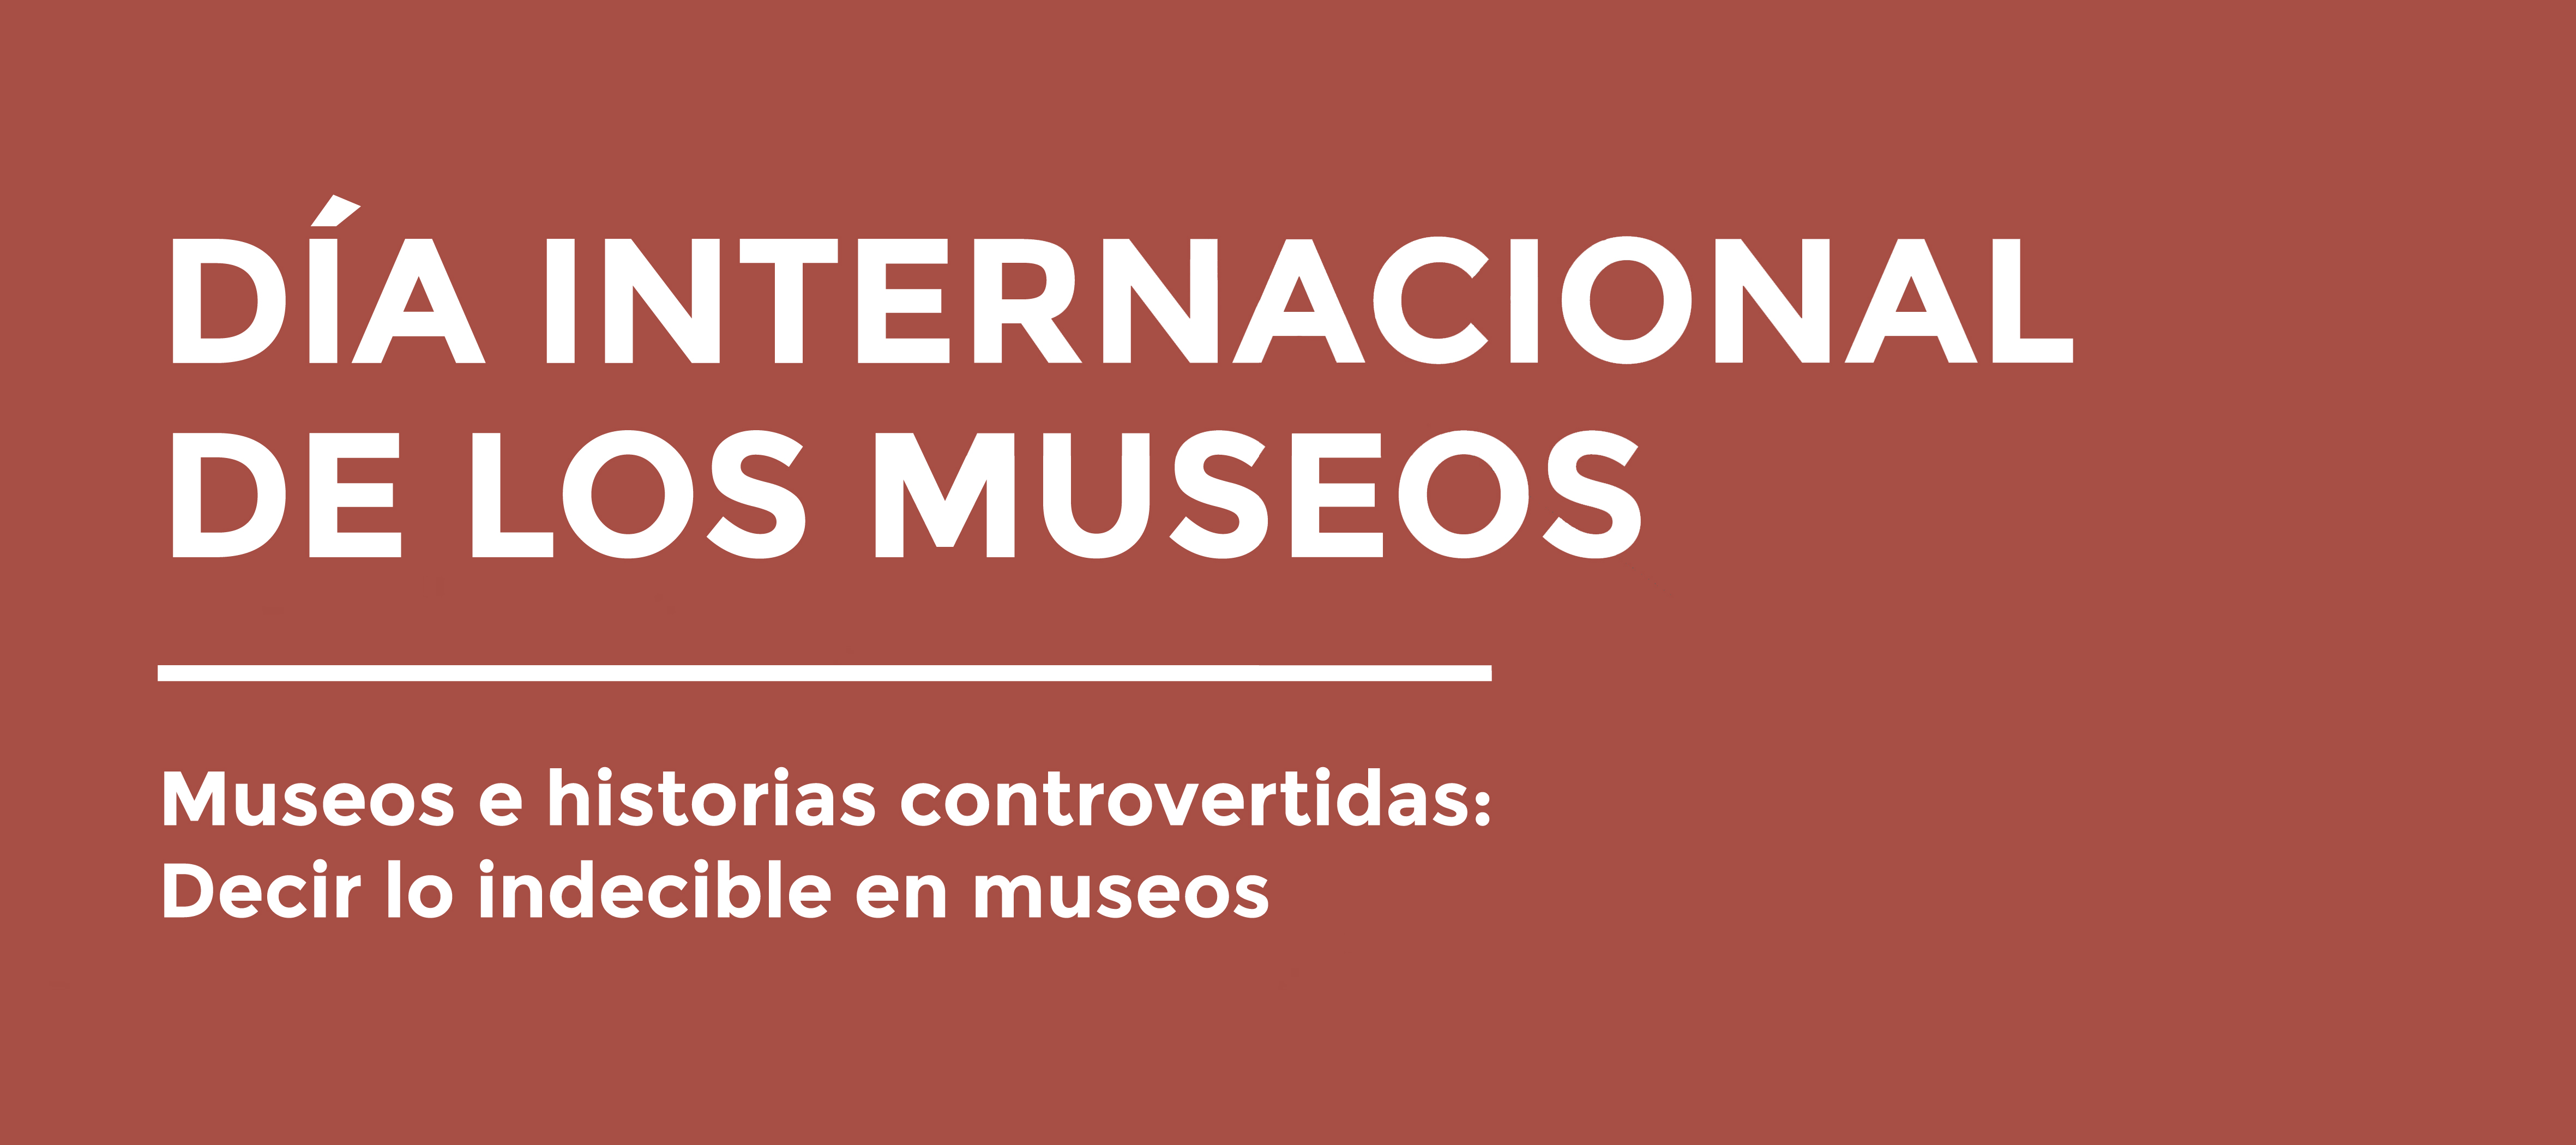 Un evento para decir lo indecible en el Museo Nacional de Colombia